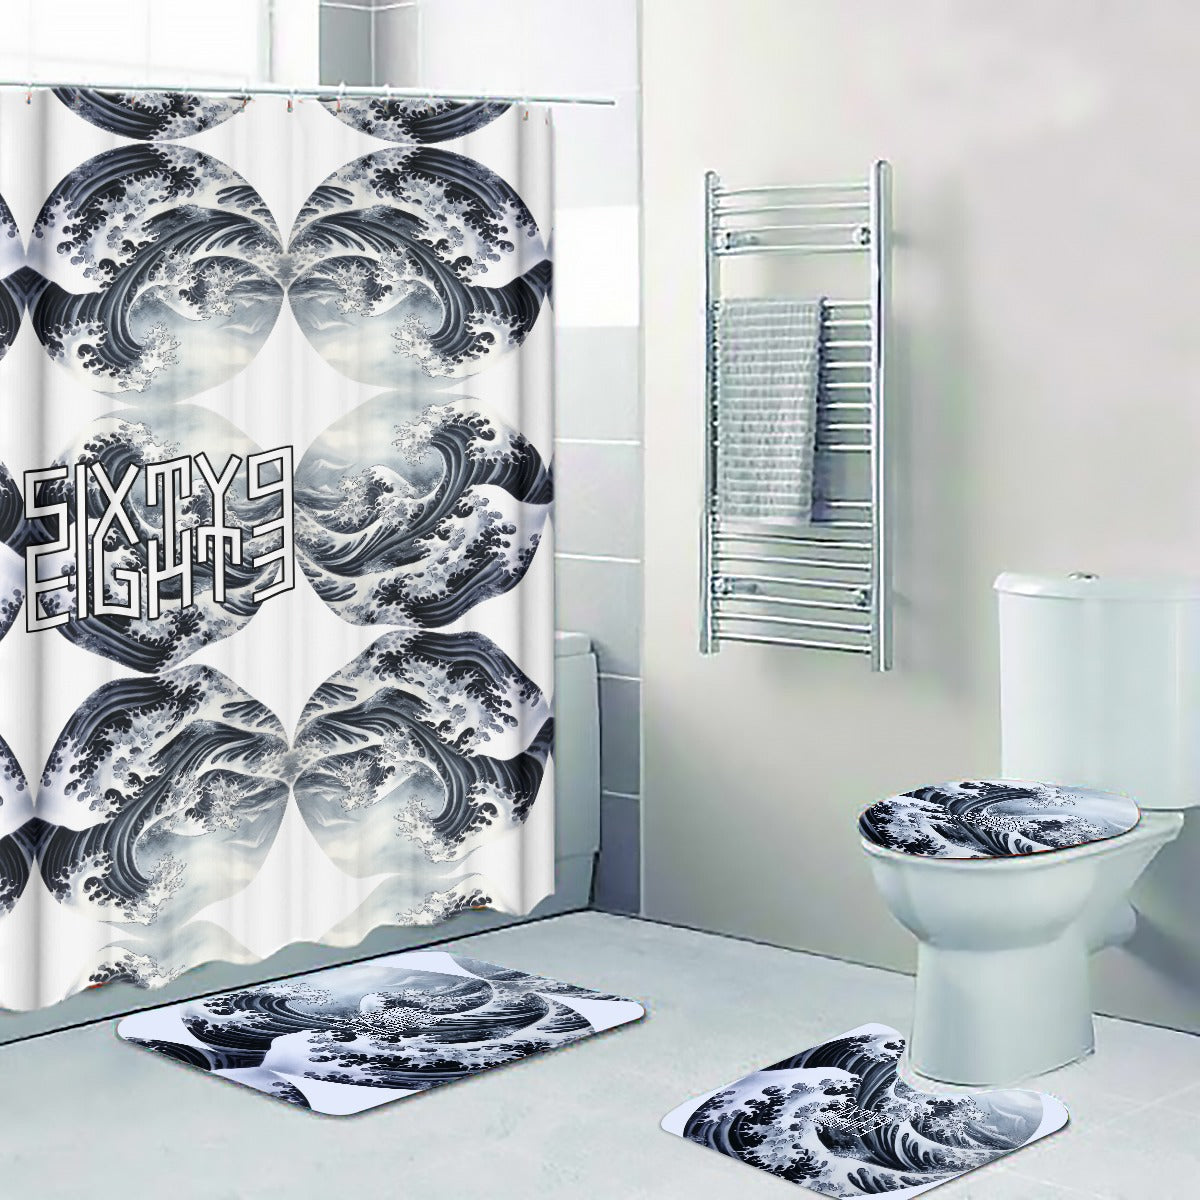 Sixty Eight 93 Logo White & Black Four-Piece Bathroom Set #8